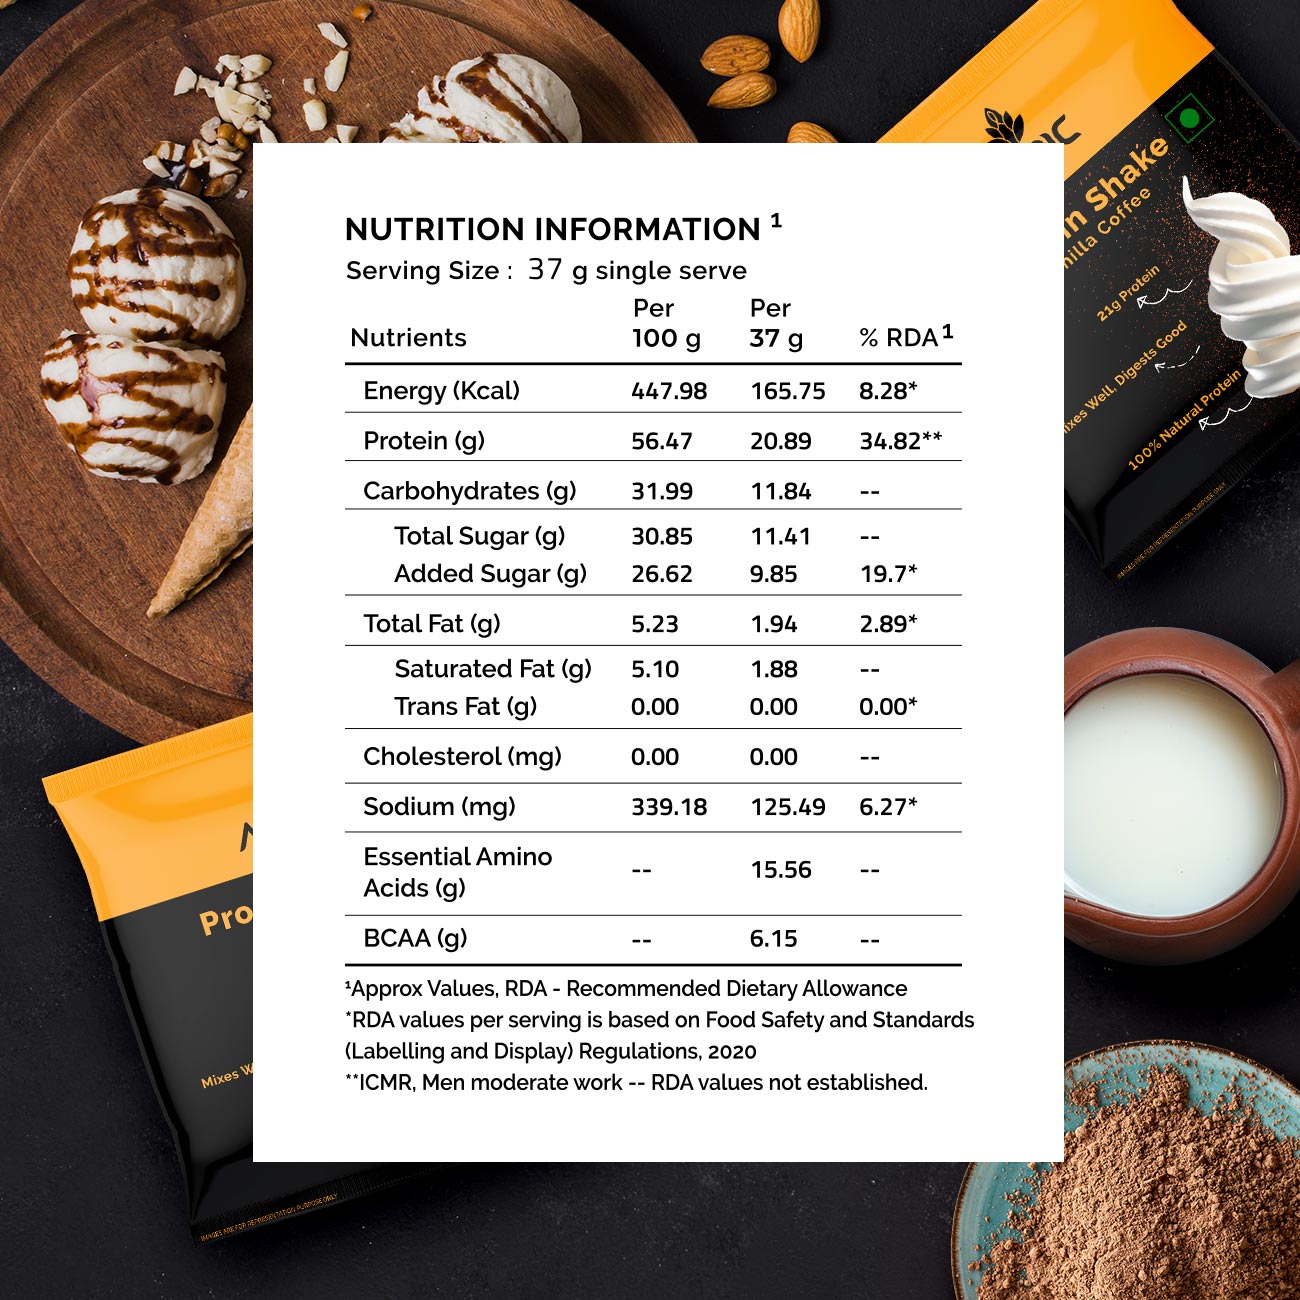 Auric Vegan Protein Powder | 21g Protein & 6g BCAA | Vanilla Coffee 8 Sachets